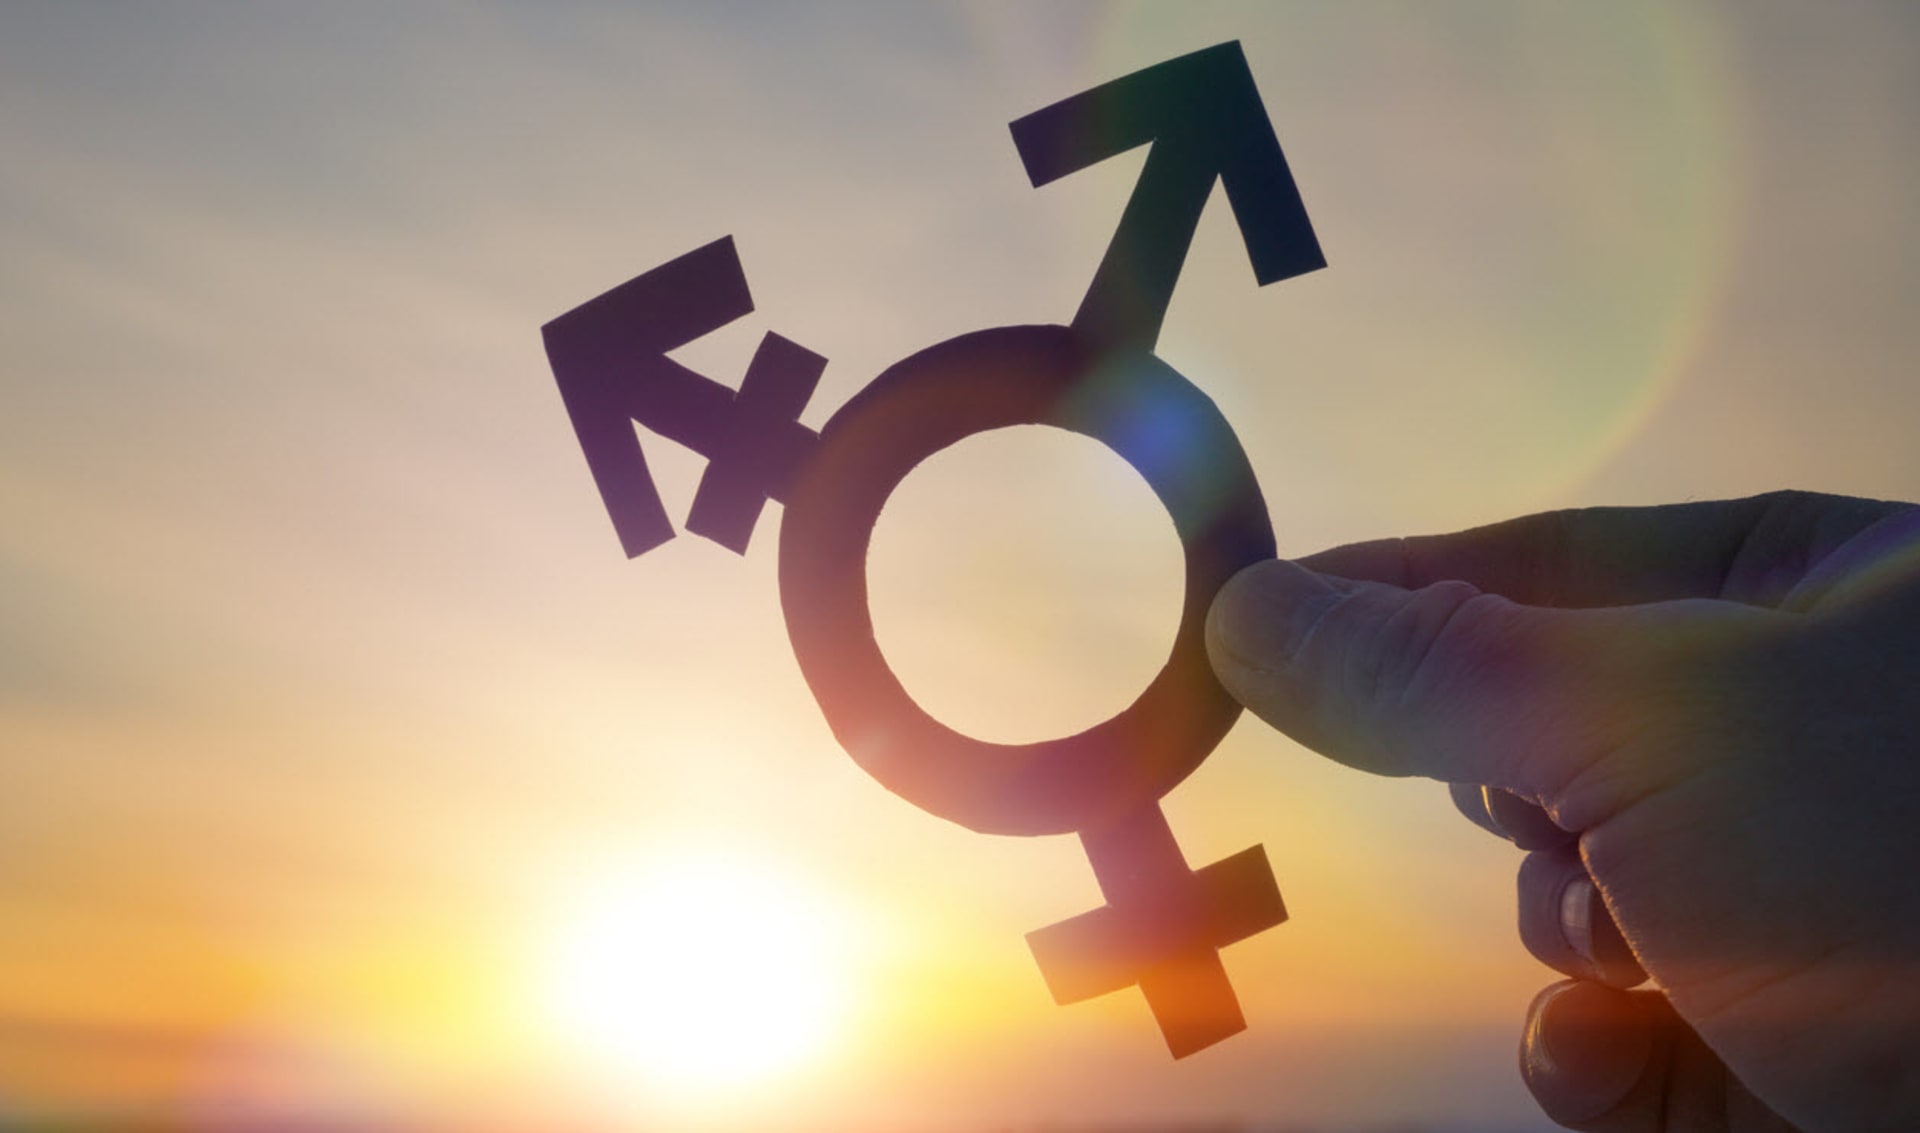 Oficiálně uznávané třetí pohlaví pro intersexuály již v Německu platí 10 let.